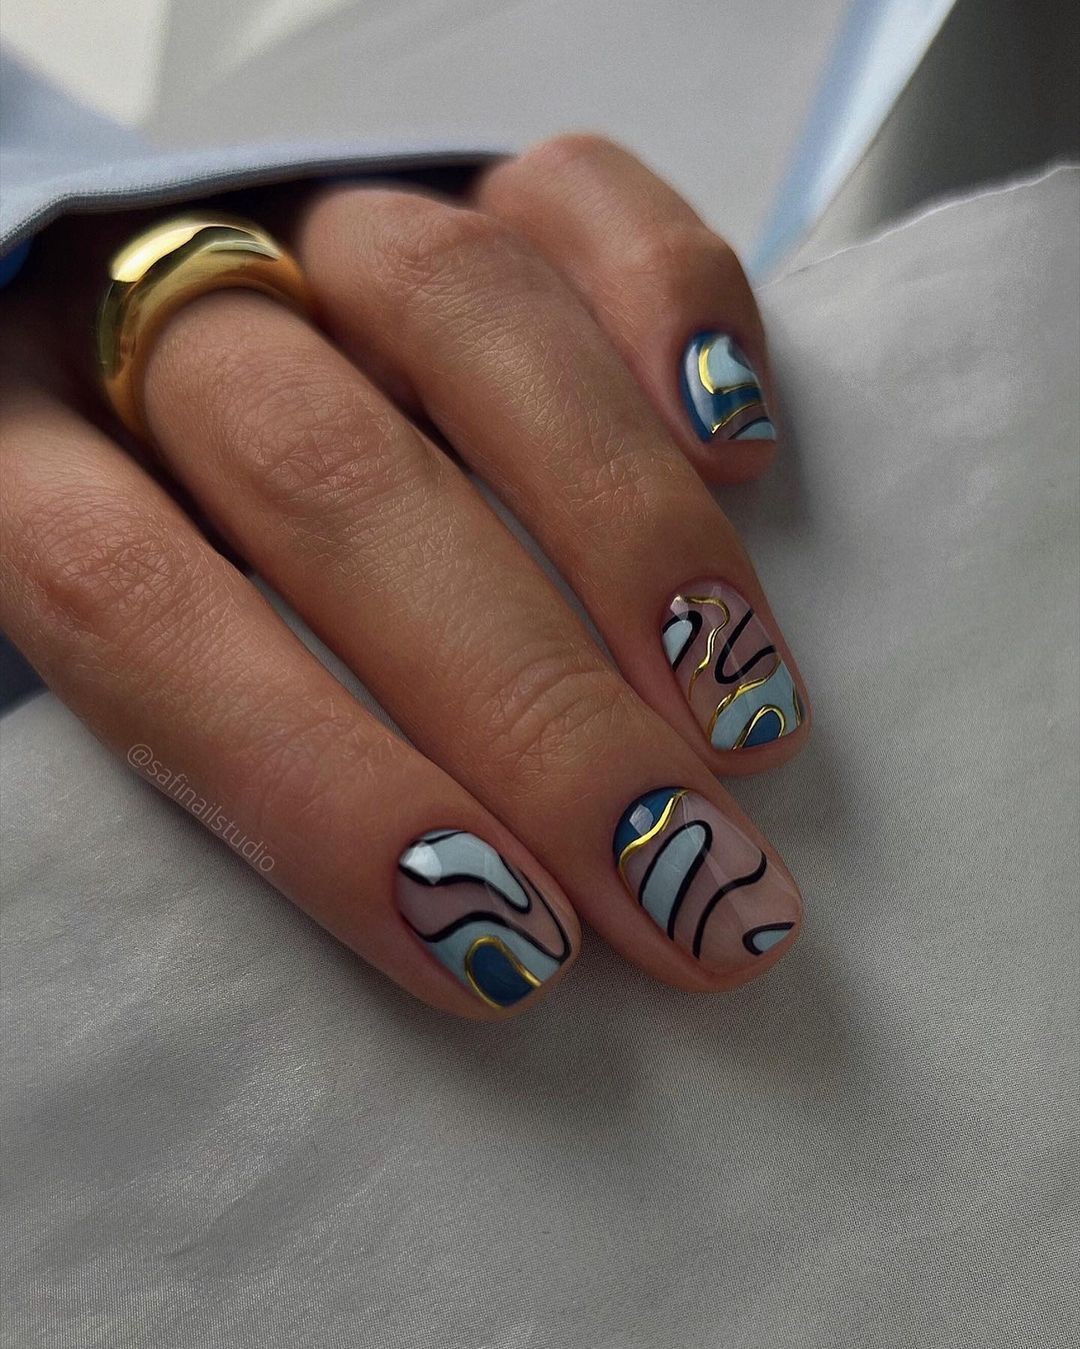 Desenhos abstratos são tendência de nail art (Foto: Reprodução/Instagram)